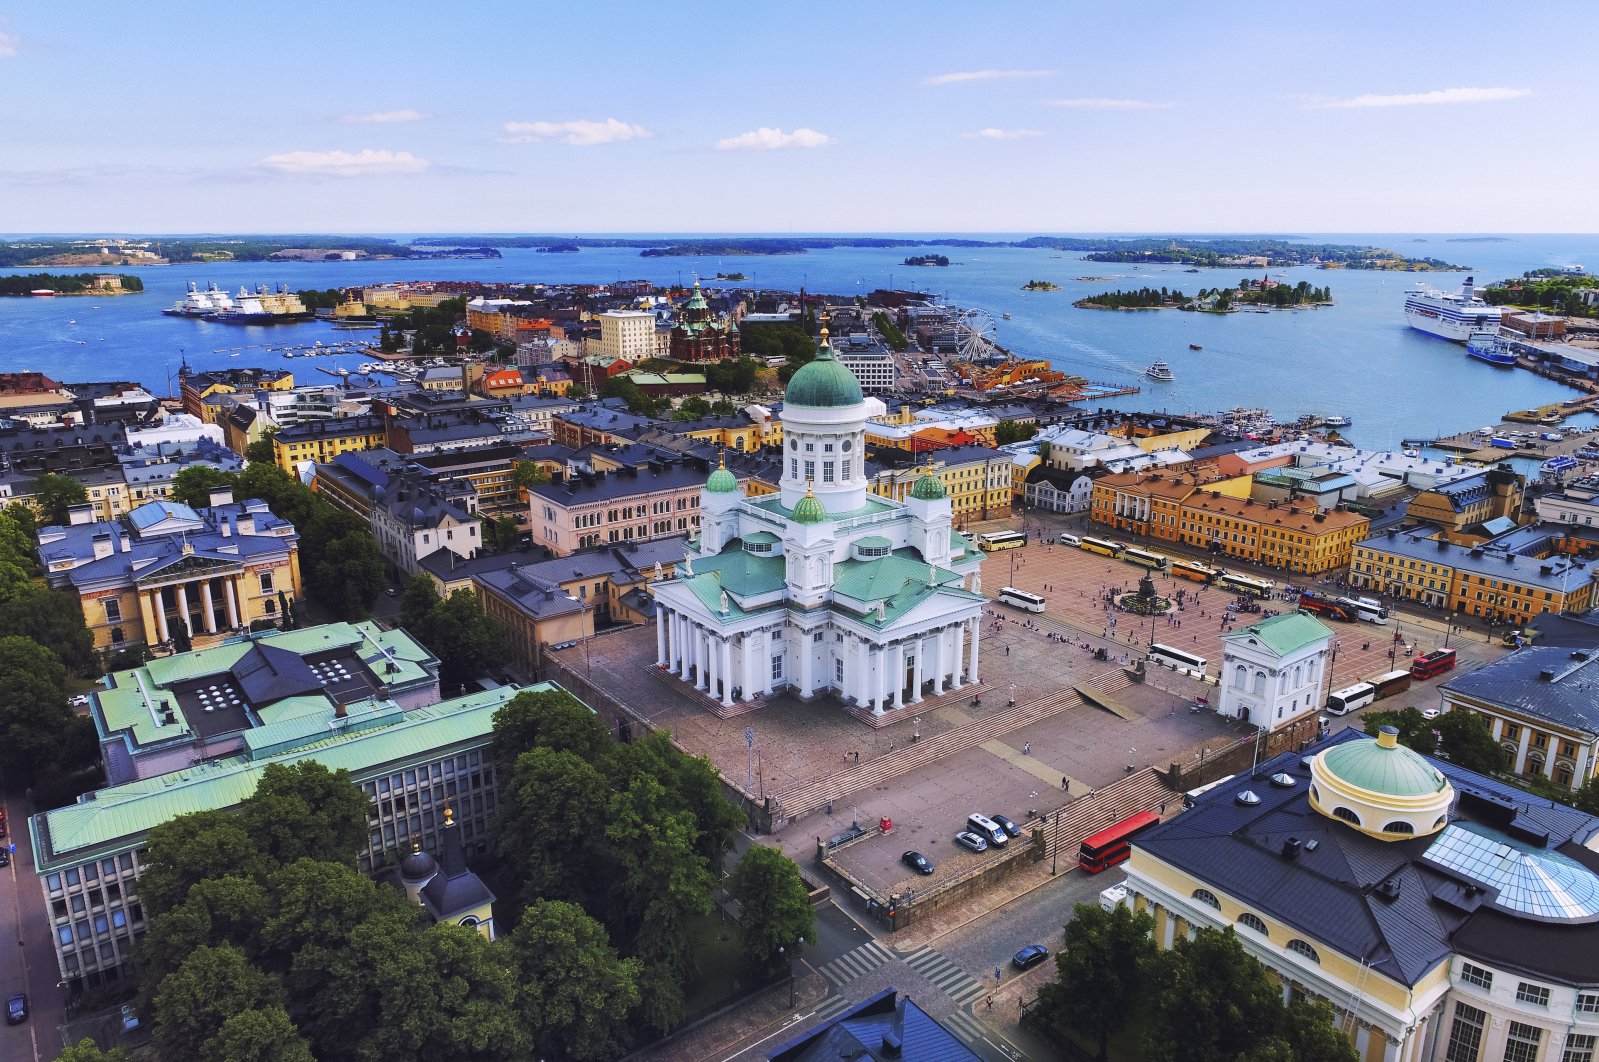 Helsinki (Getty Images)